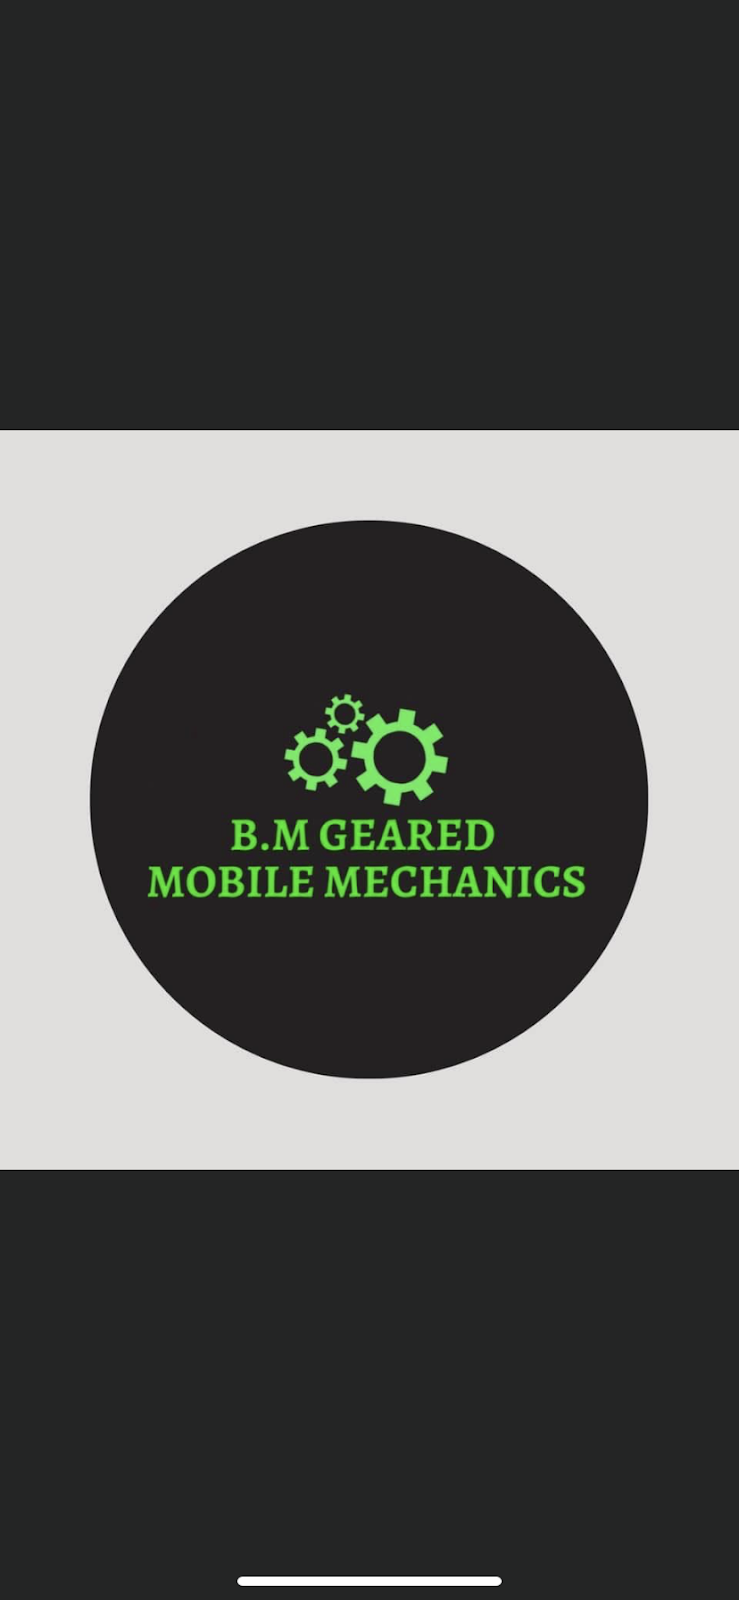 B.M Geared Mobile Mechanics | car repair | 7 Mulga Pl, Ulladulla NSW 2539, Australia | 0403965956 OR +61 403 965 956